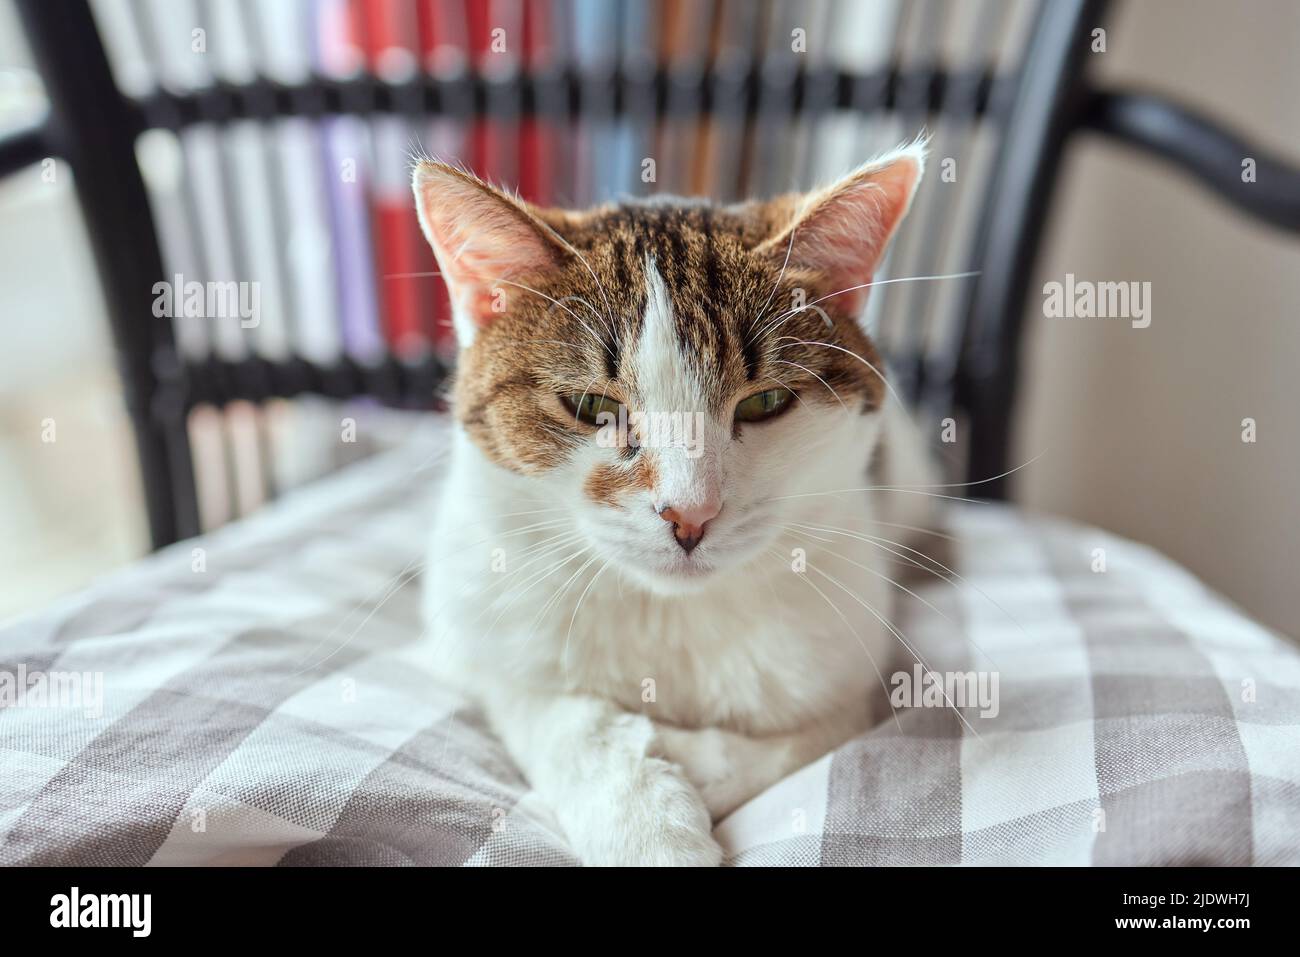 il gatto con le strisce si siede sul lettino e guarda direttamente la telecamera Foto Stock